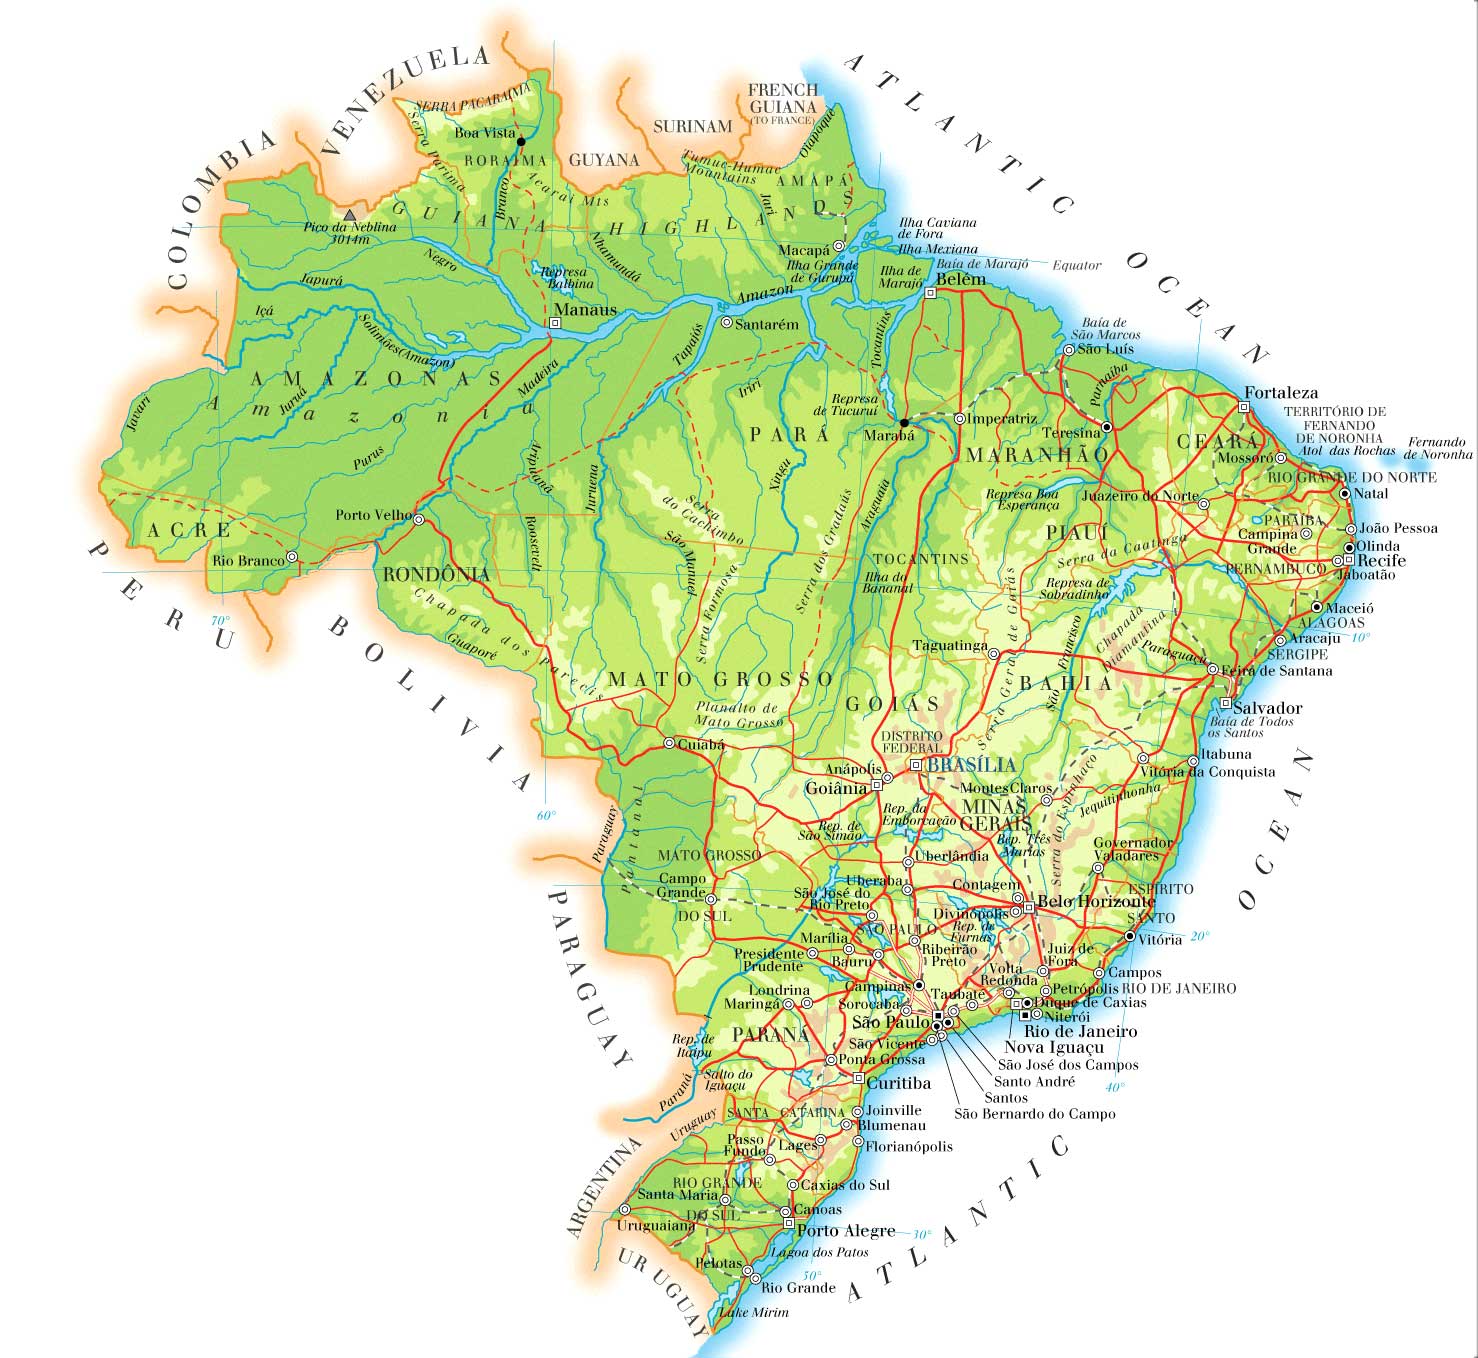 B N H Nh Ch Nh T N C Brazil Brazil Map Ph Ng To N M